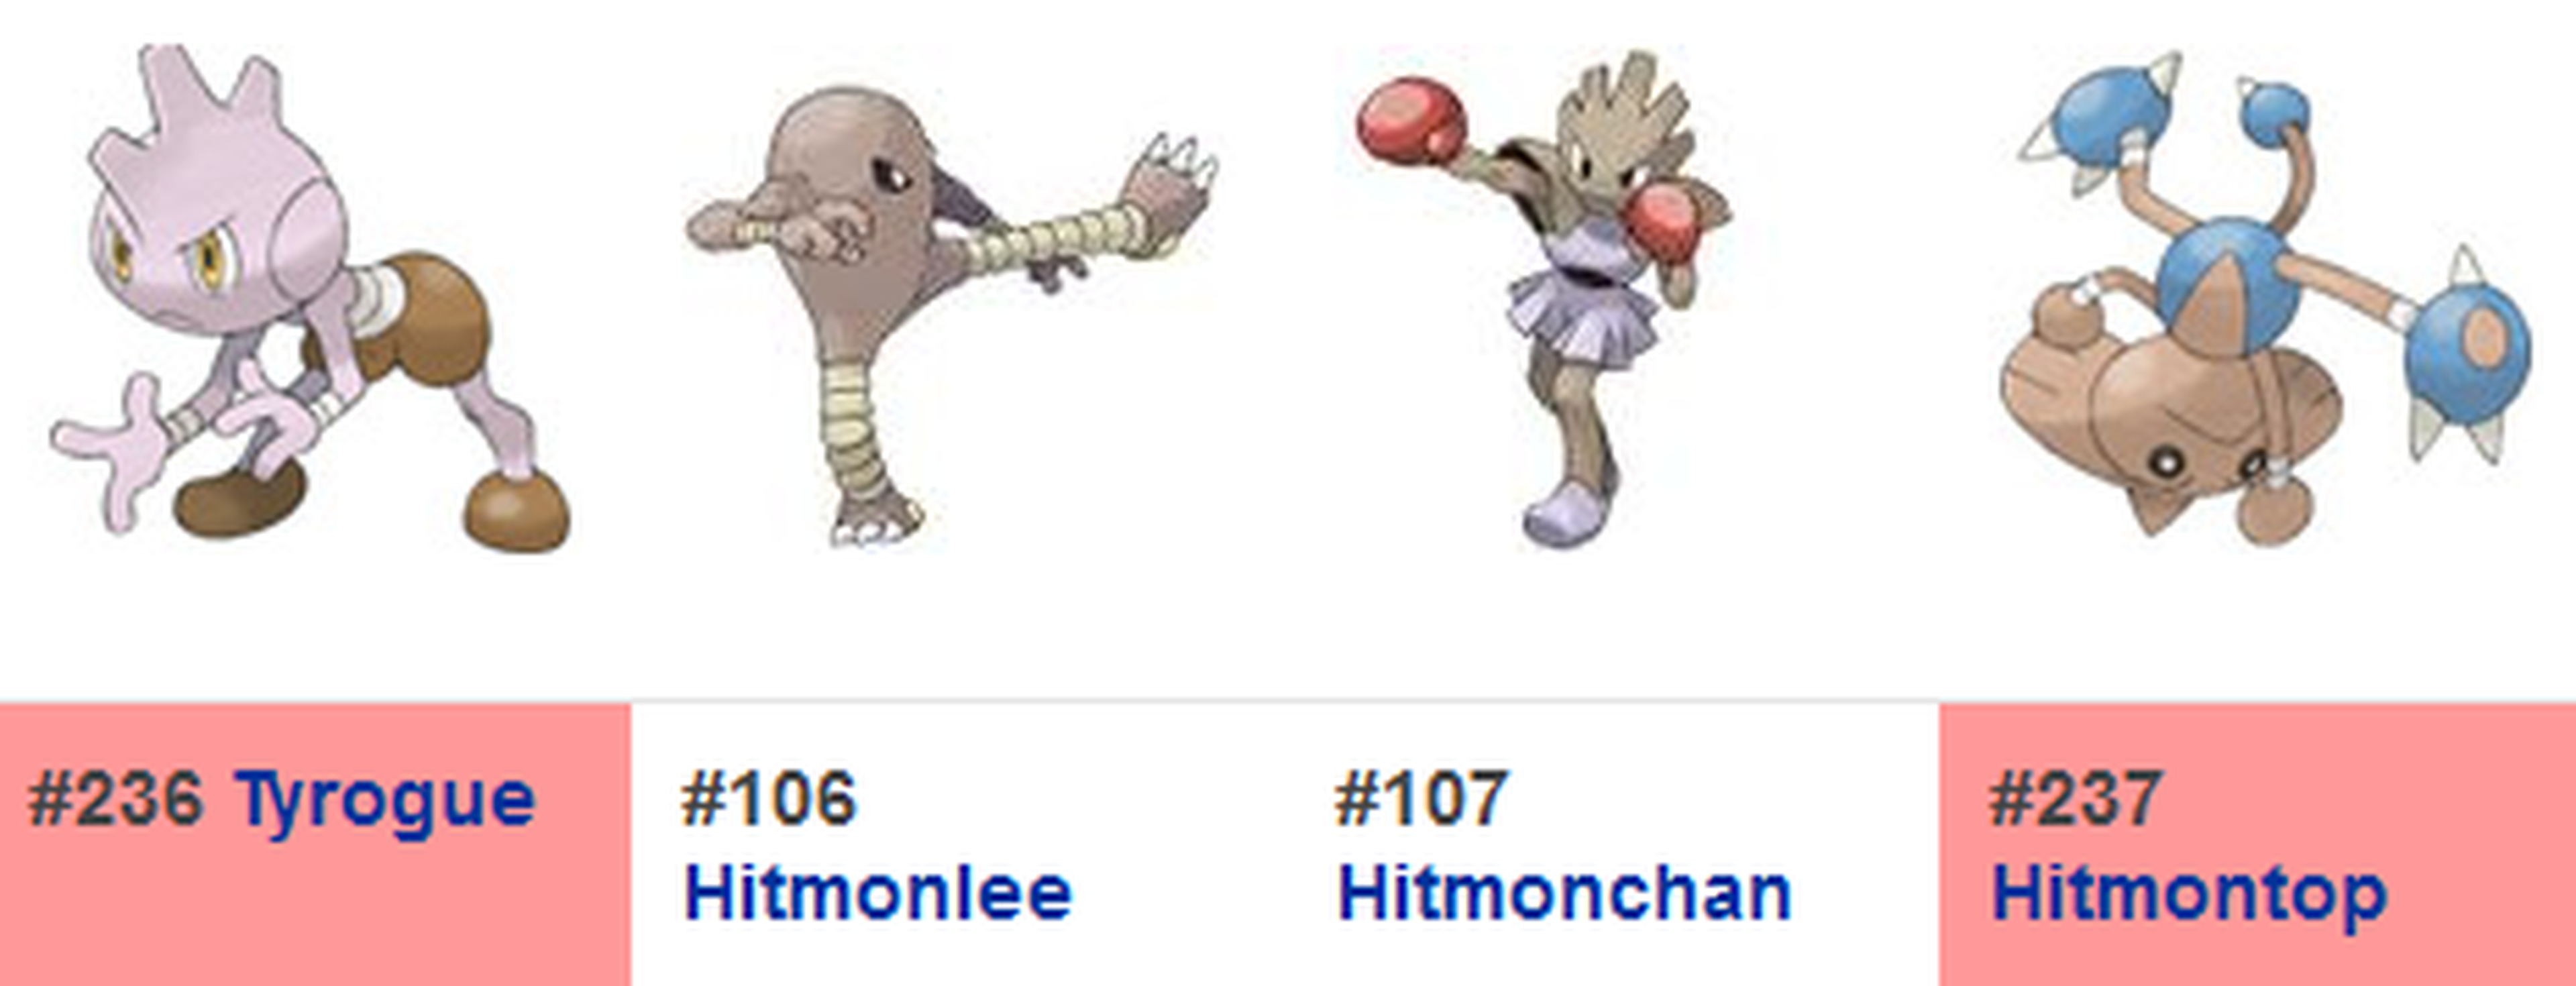 Tyrogue y Hitmontop se incorporarían en la 2ª generación de Pokémon GO